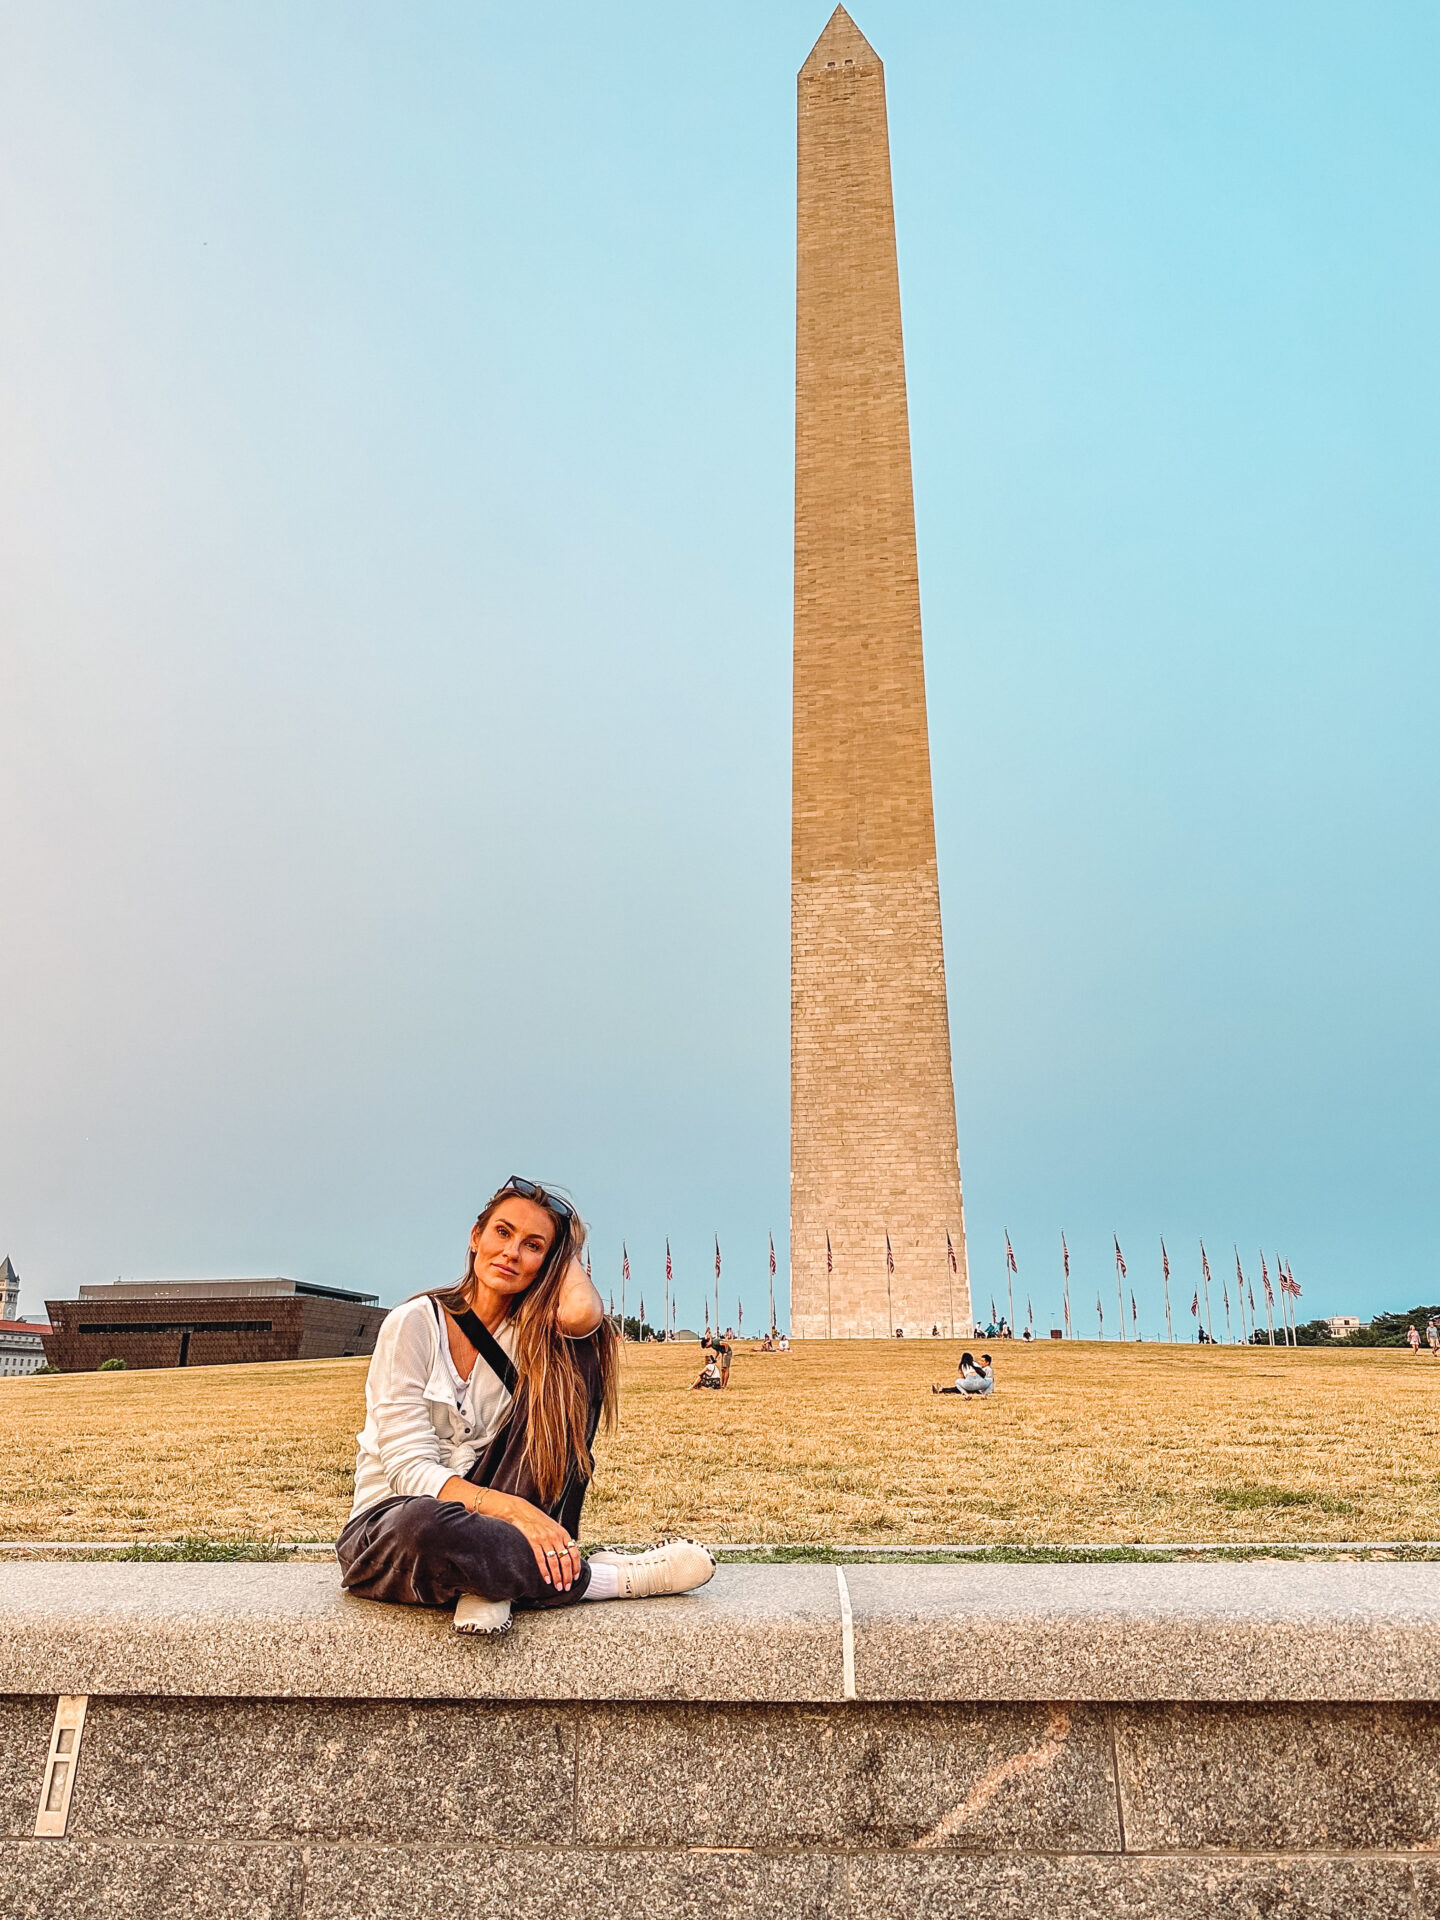 Washington Monument
Lifestyle and travel blogger Angela Lanter